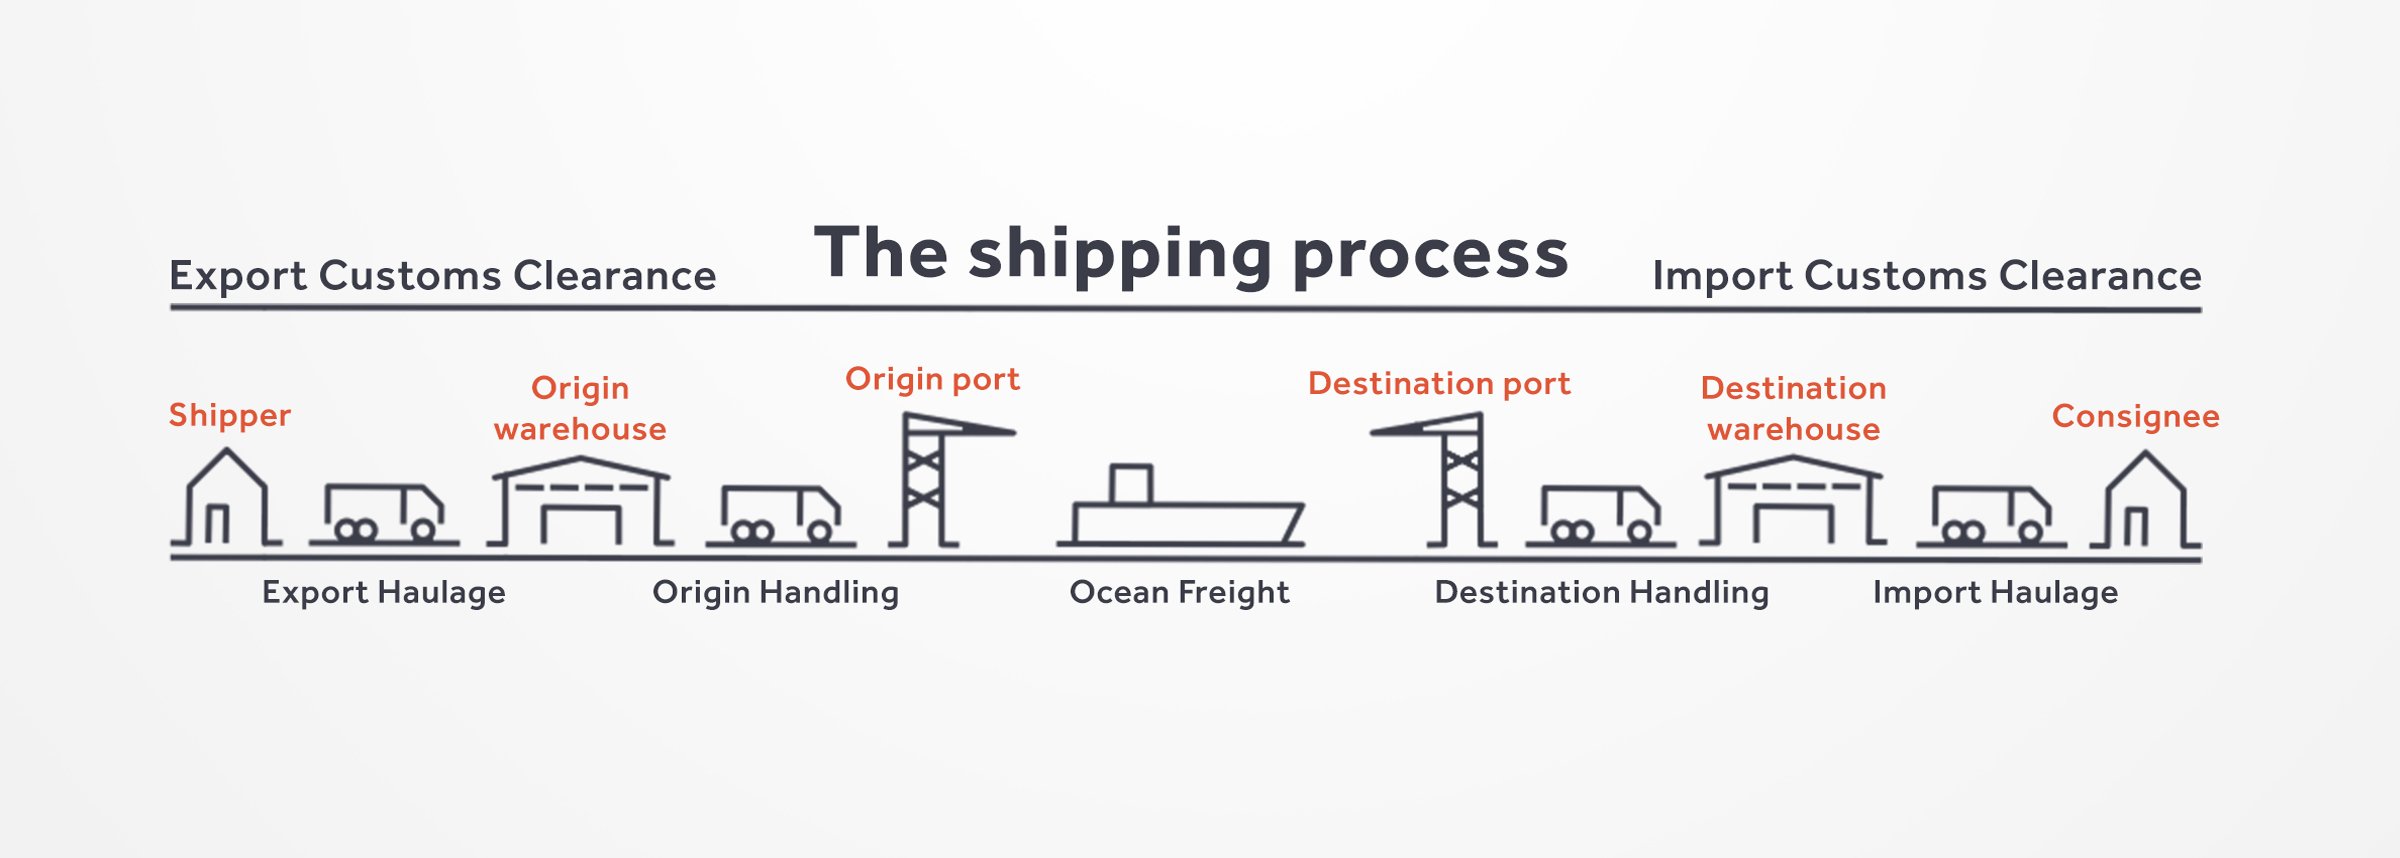 Quy trình vận gửi sản phẩm & hàng hóa xuất nhập khẩu